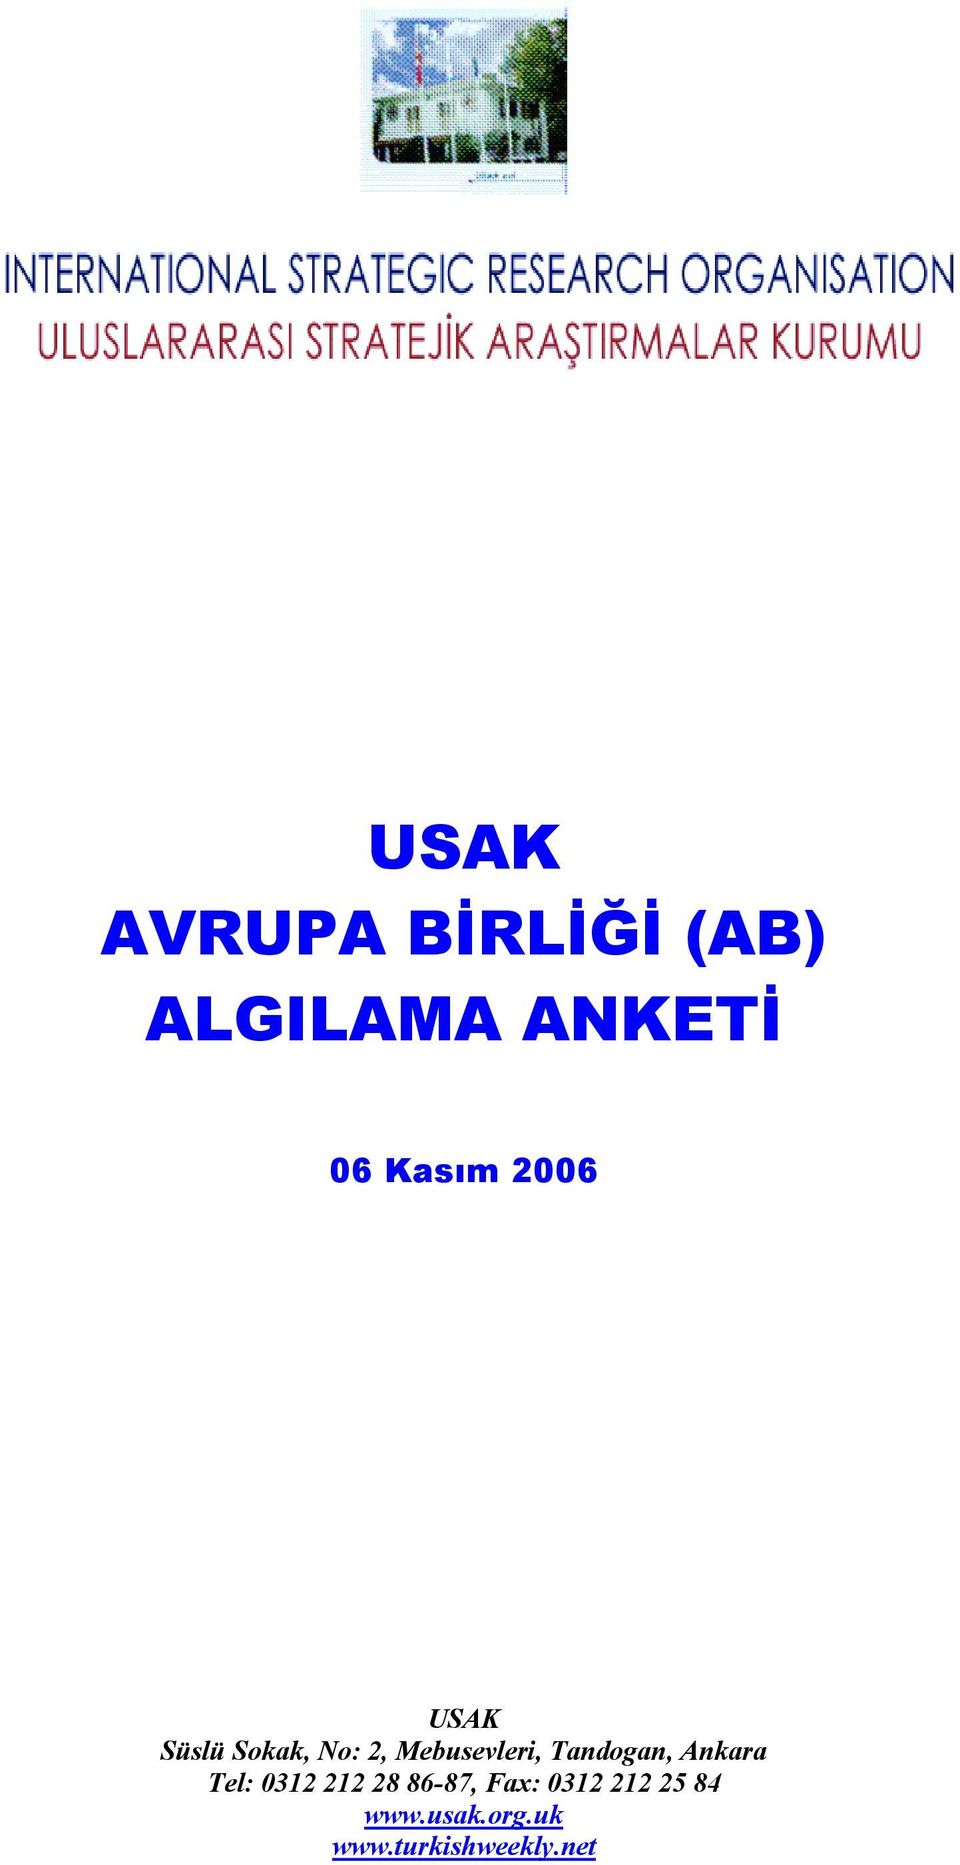 Mebusevleri, Tandogan, Ankara Tel: 0312 212 28